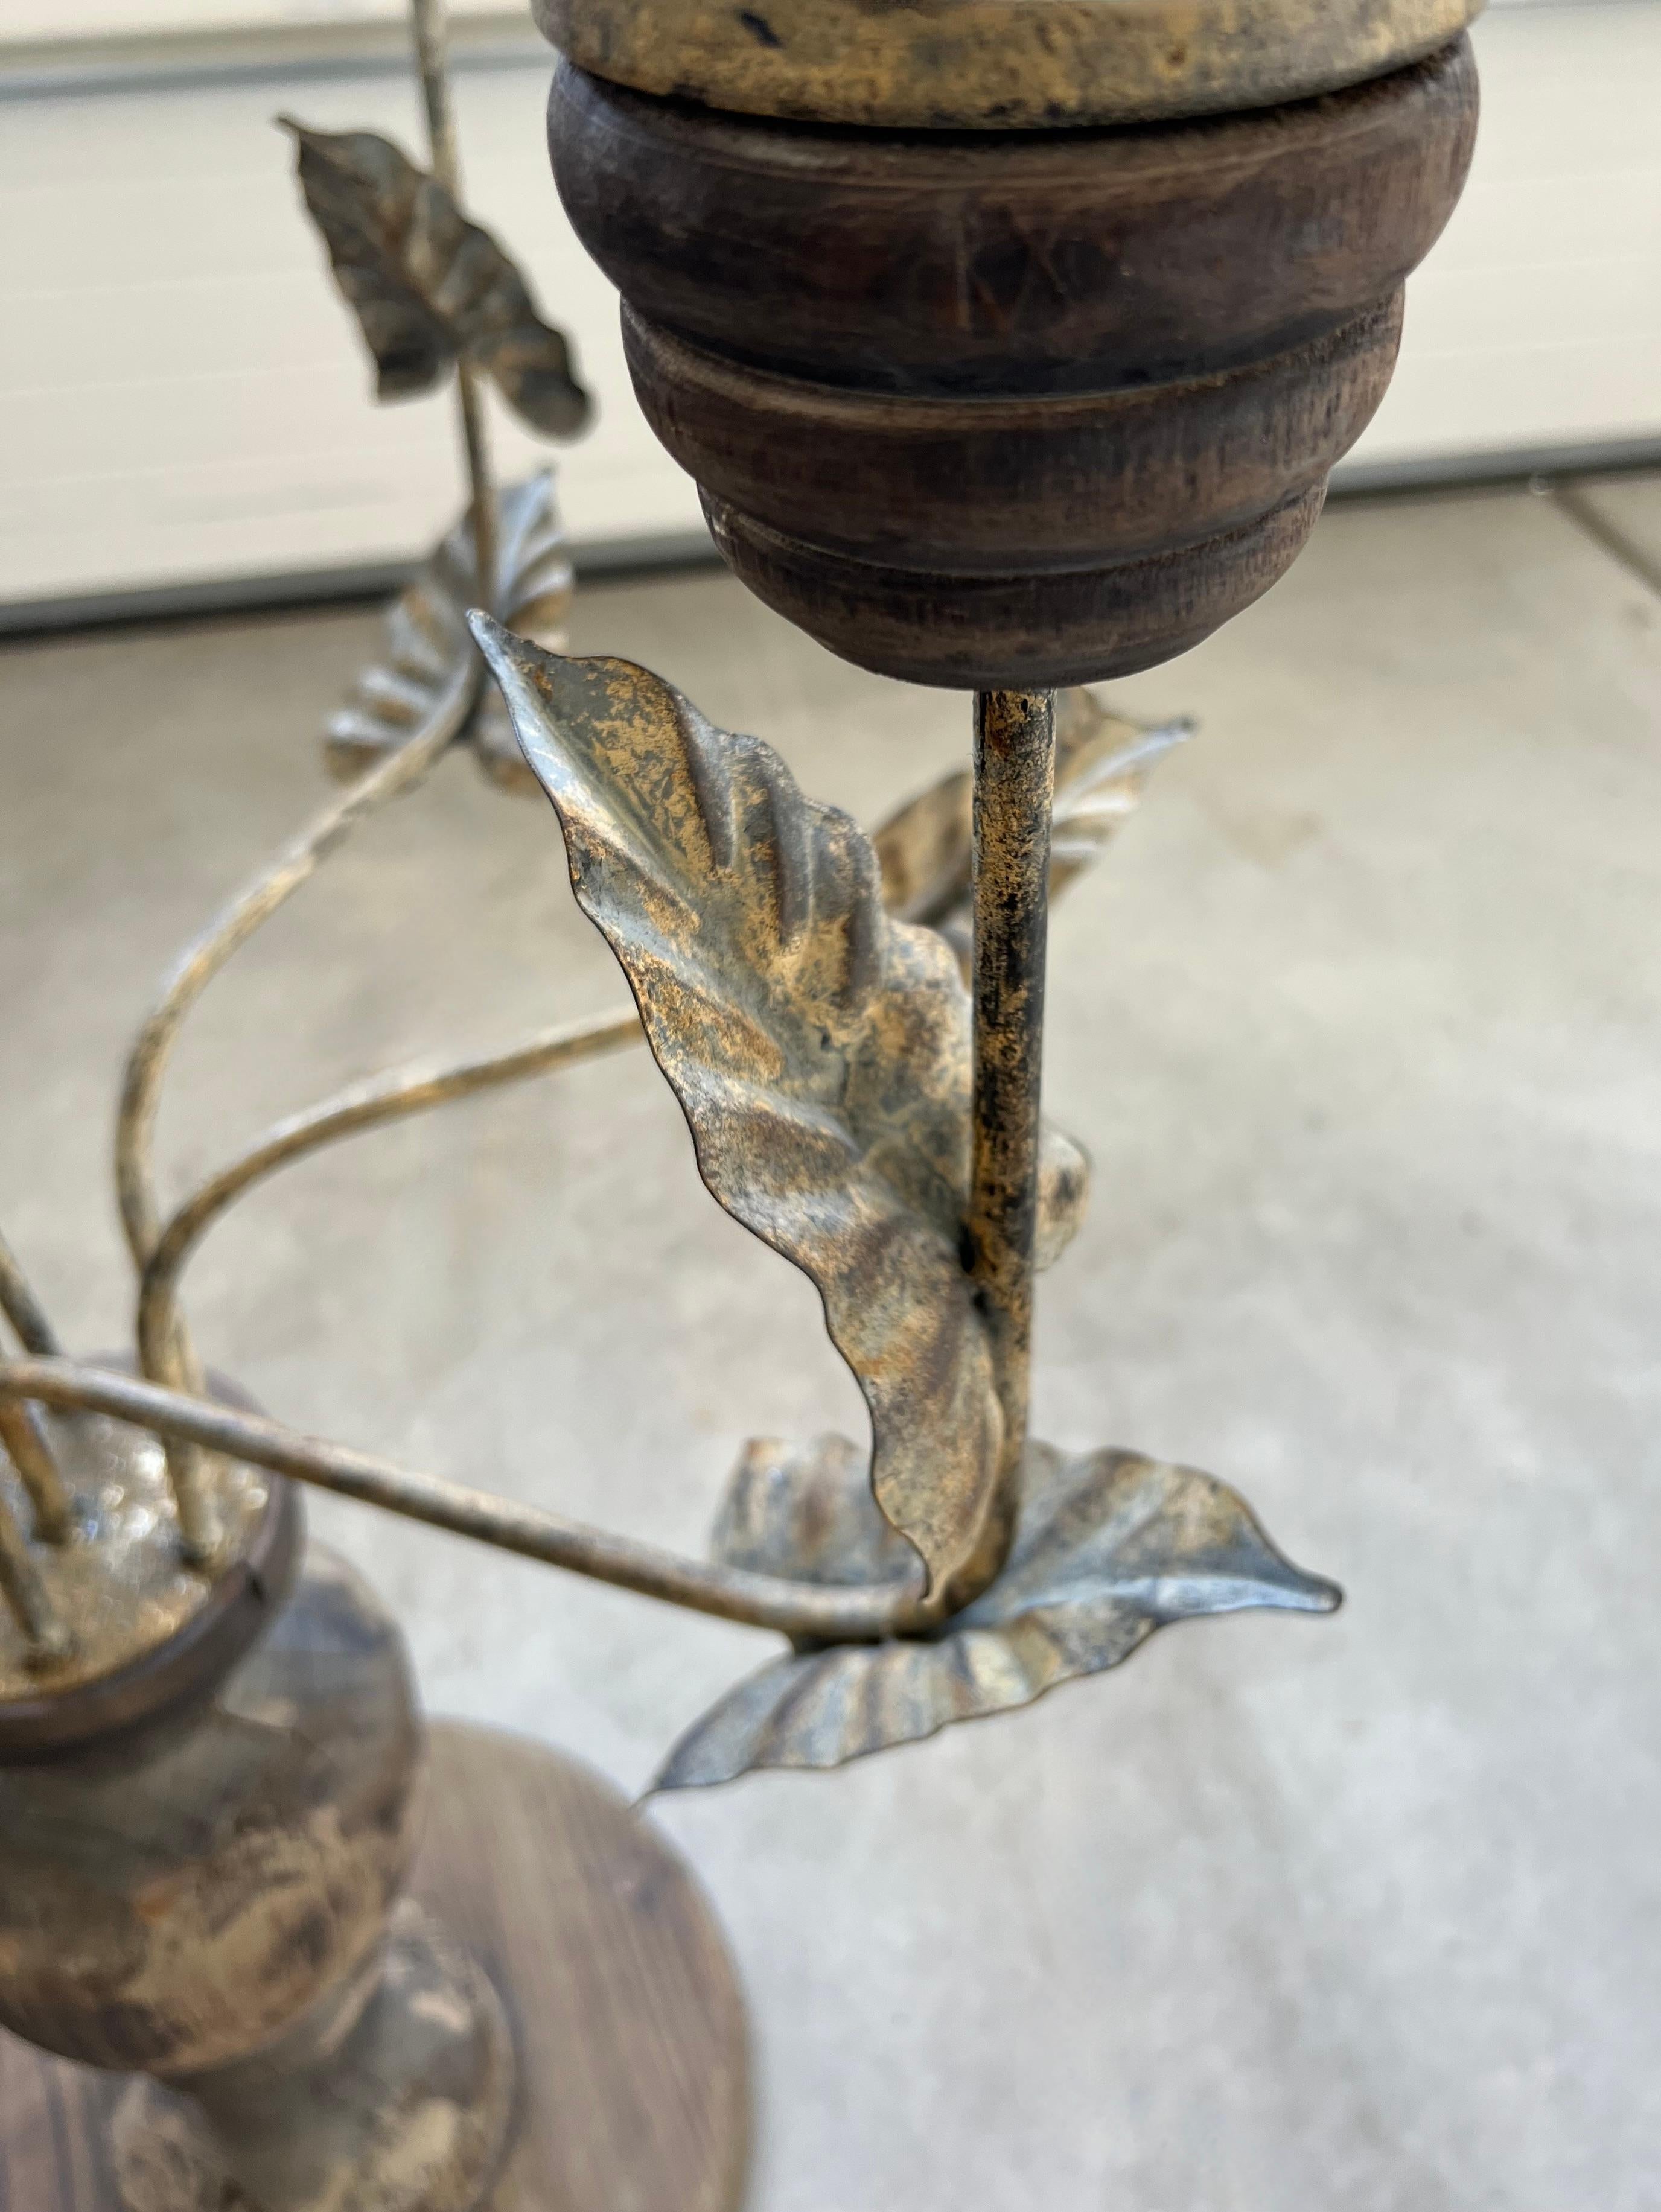 Ce candélabre géant contient sept bougies piliers.  Six d'entre eux entourent un bougeoir plus haut que les autres au milieu. Il est doté de bras en métal peint et d'une solide base en bois rustique.  Les bras sont ornés d'un feuillage en métal et